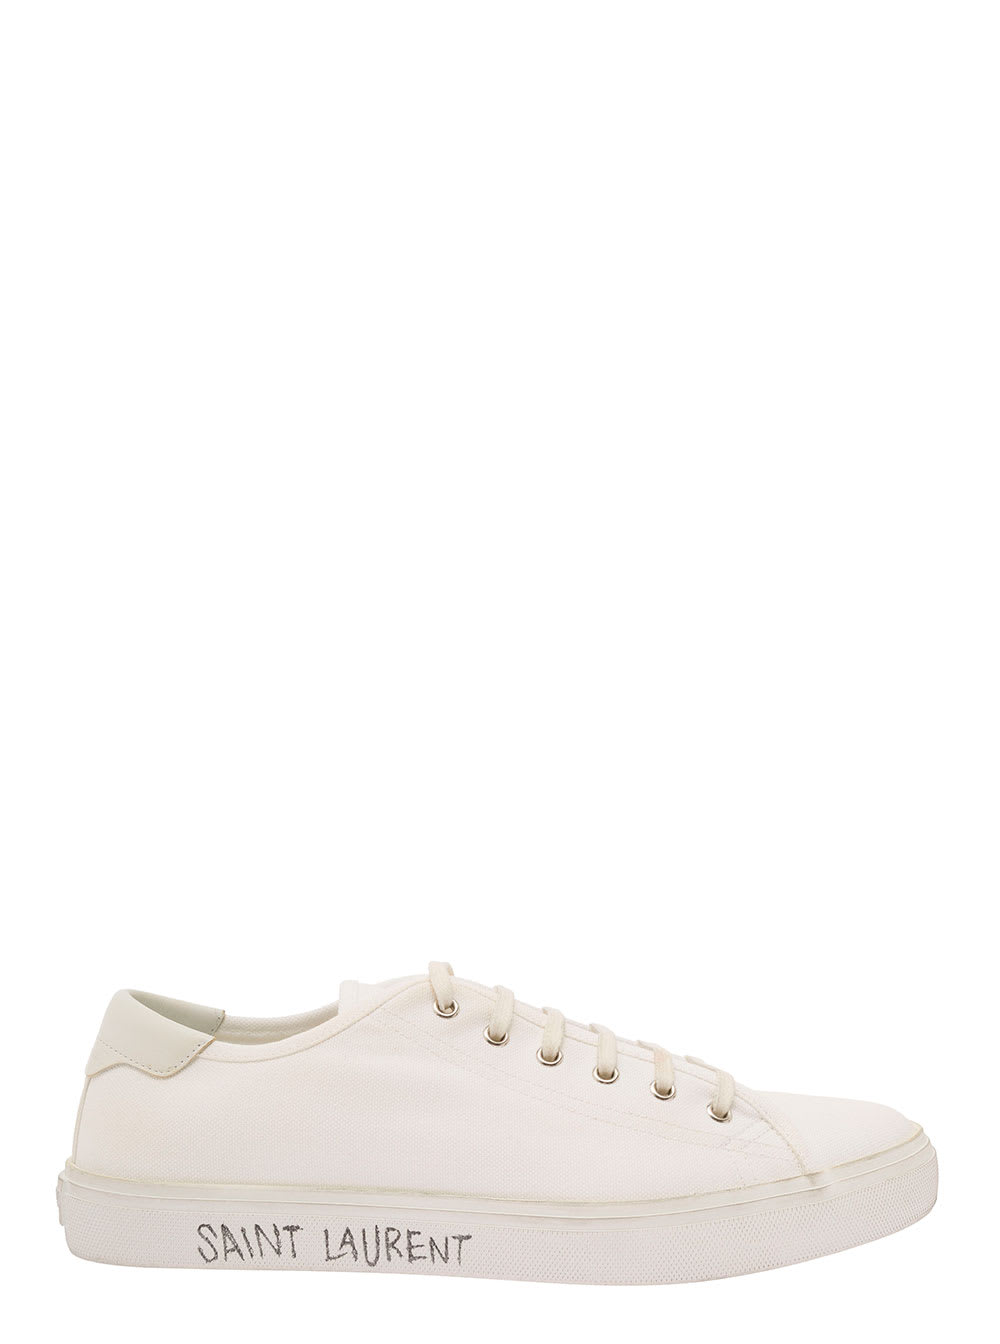 Saint Laurent Malibu Lt Sneaker In White